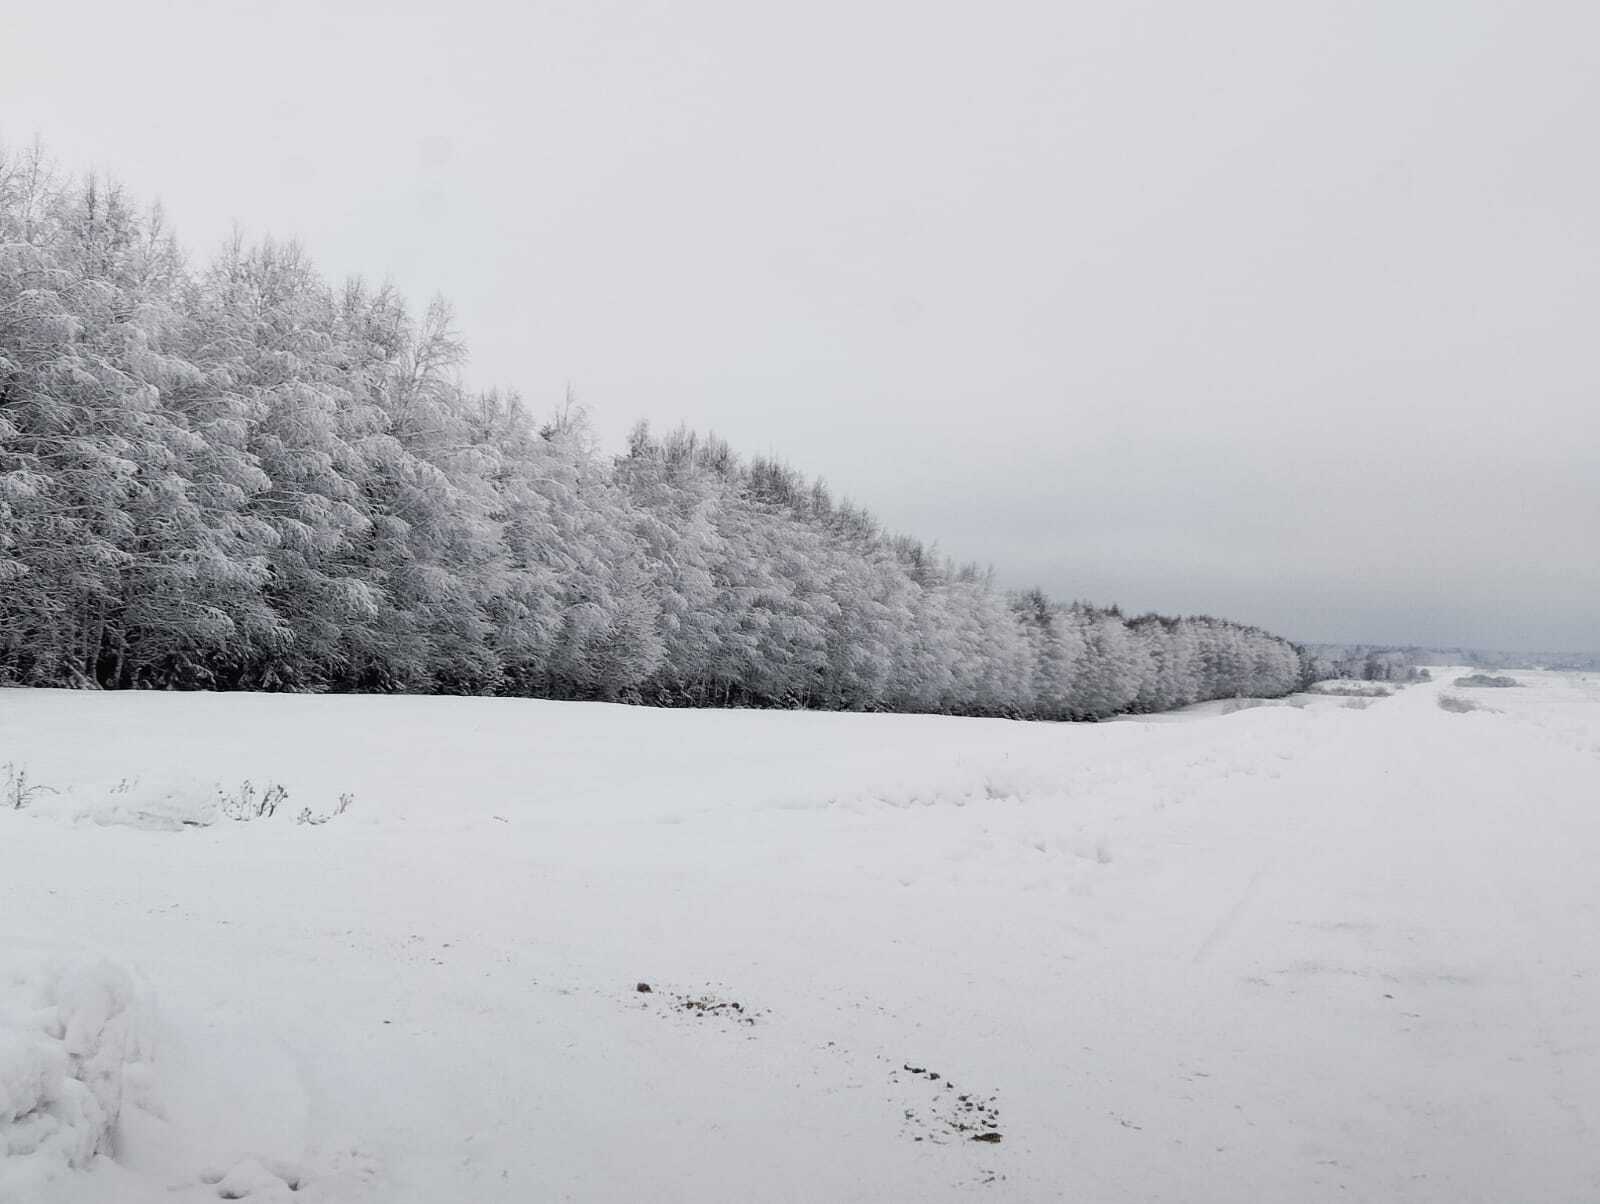 Снег, метель, ураганный ветер: МЧС по Башкирии предупреждает о ненастной погоде